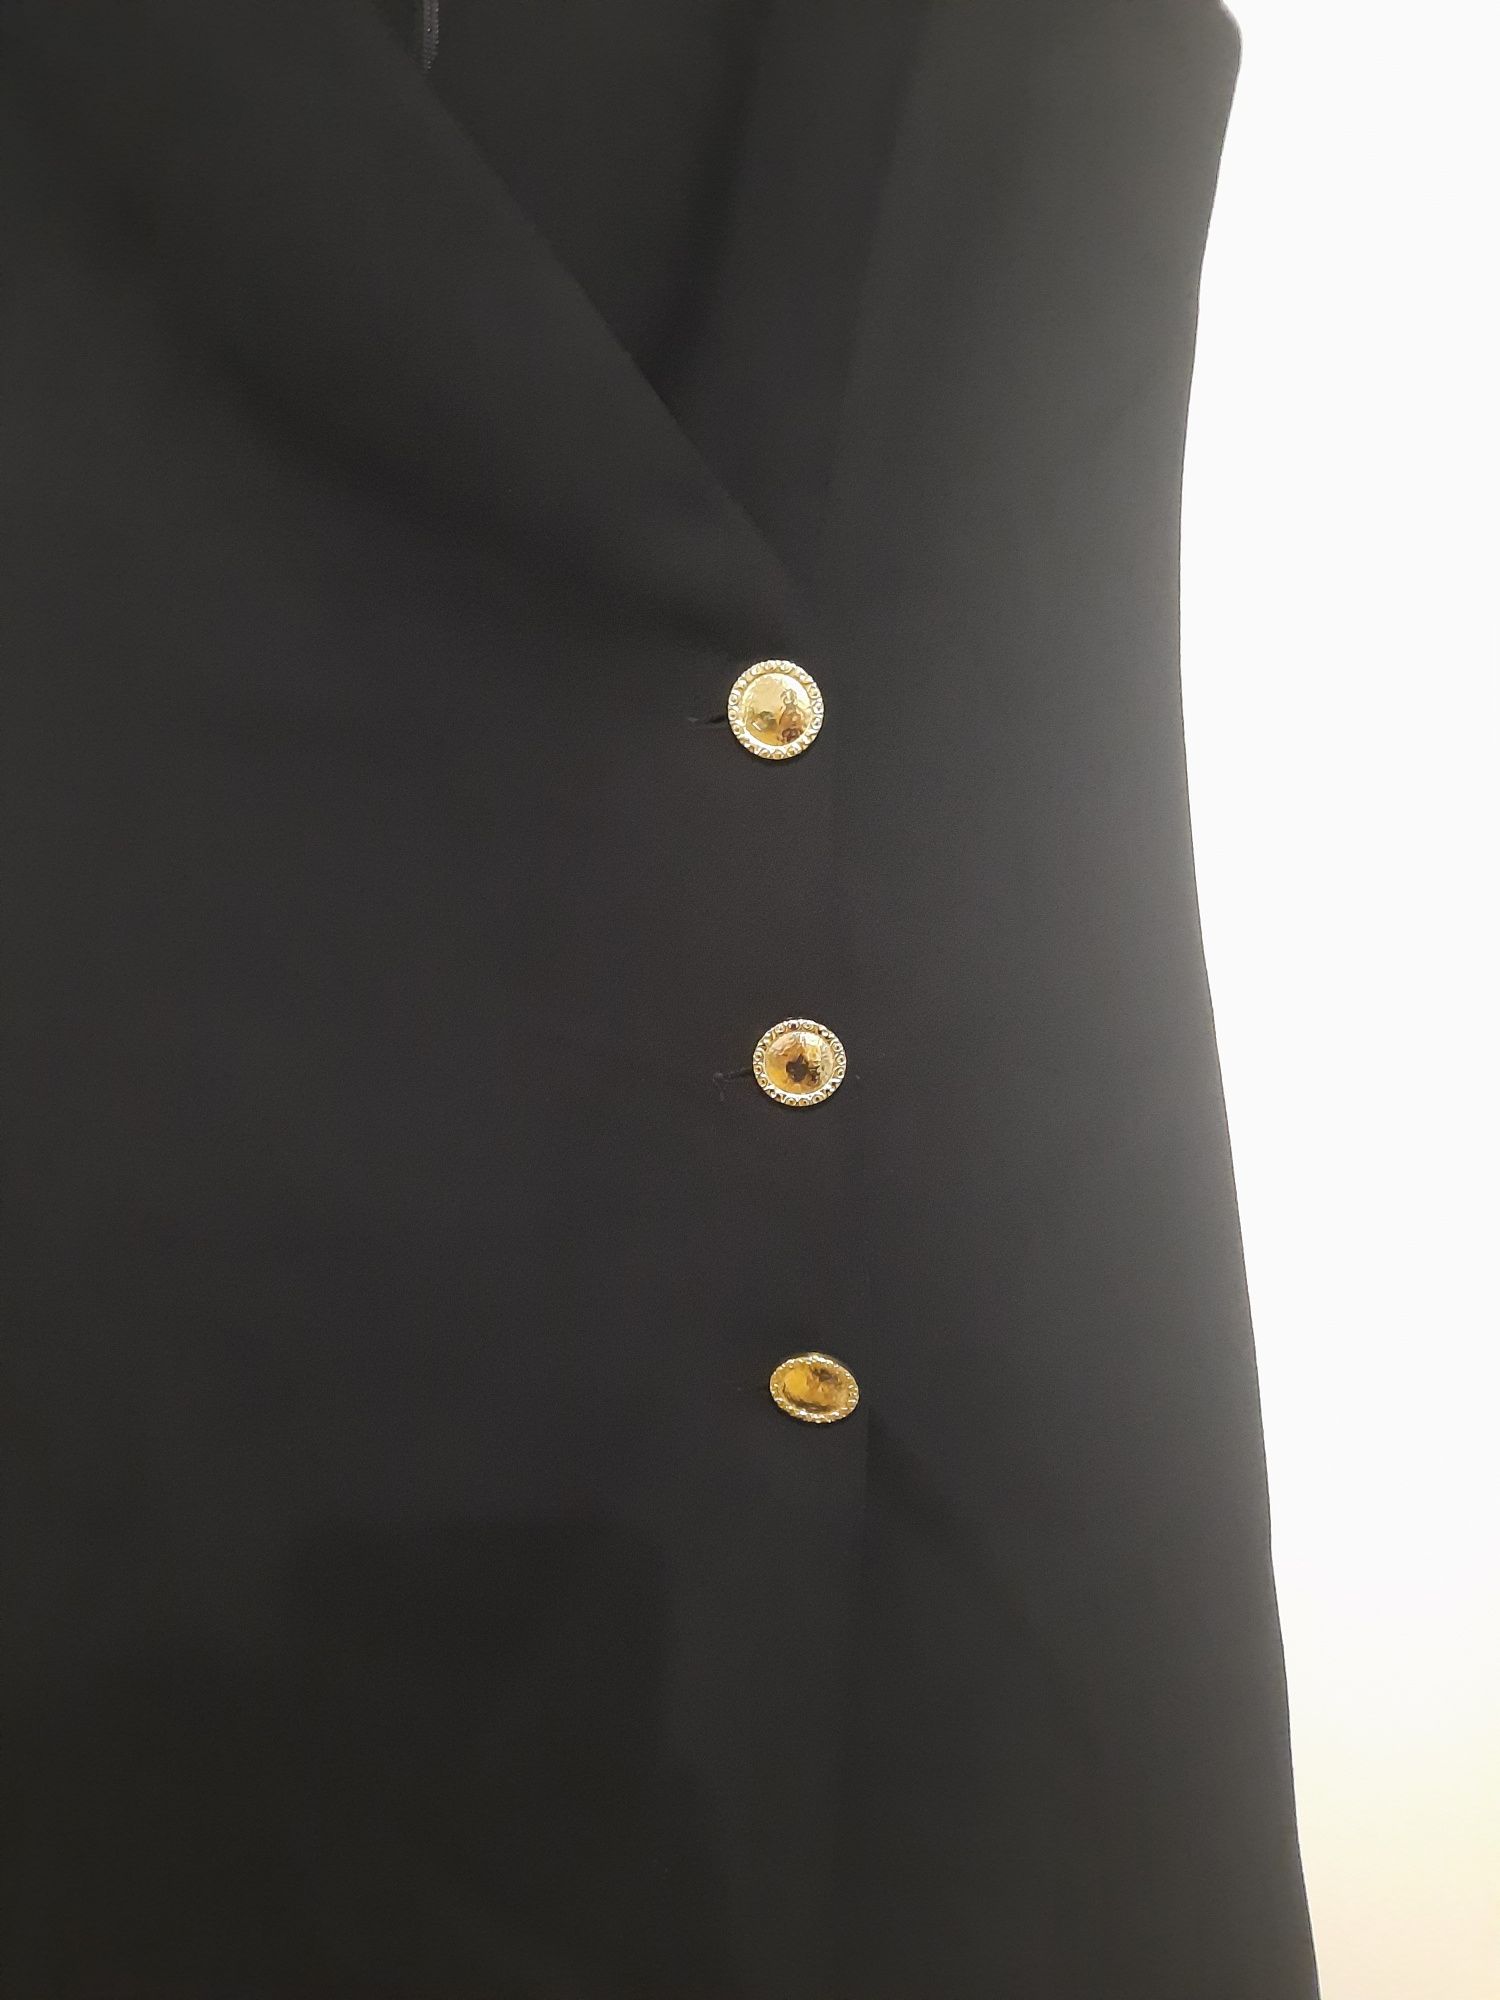 Vestido curto com botões dourados Tam.S da Mango NOVO (com etiqueta)